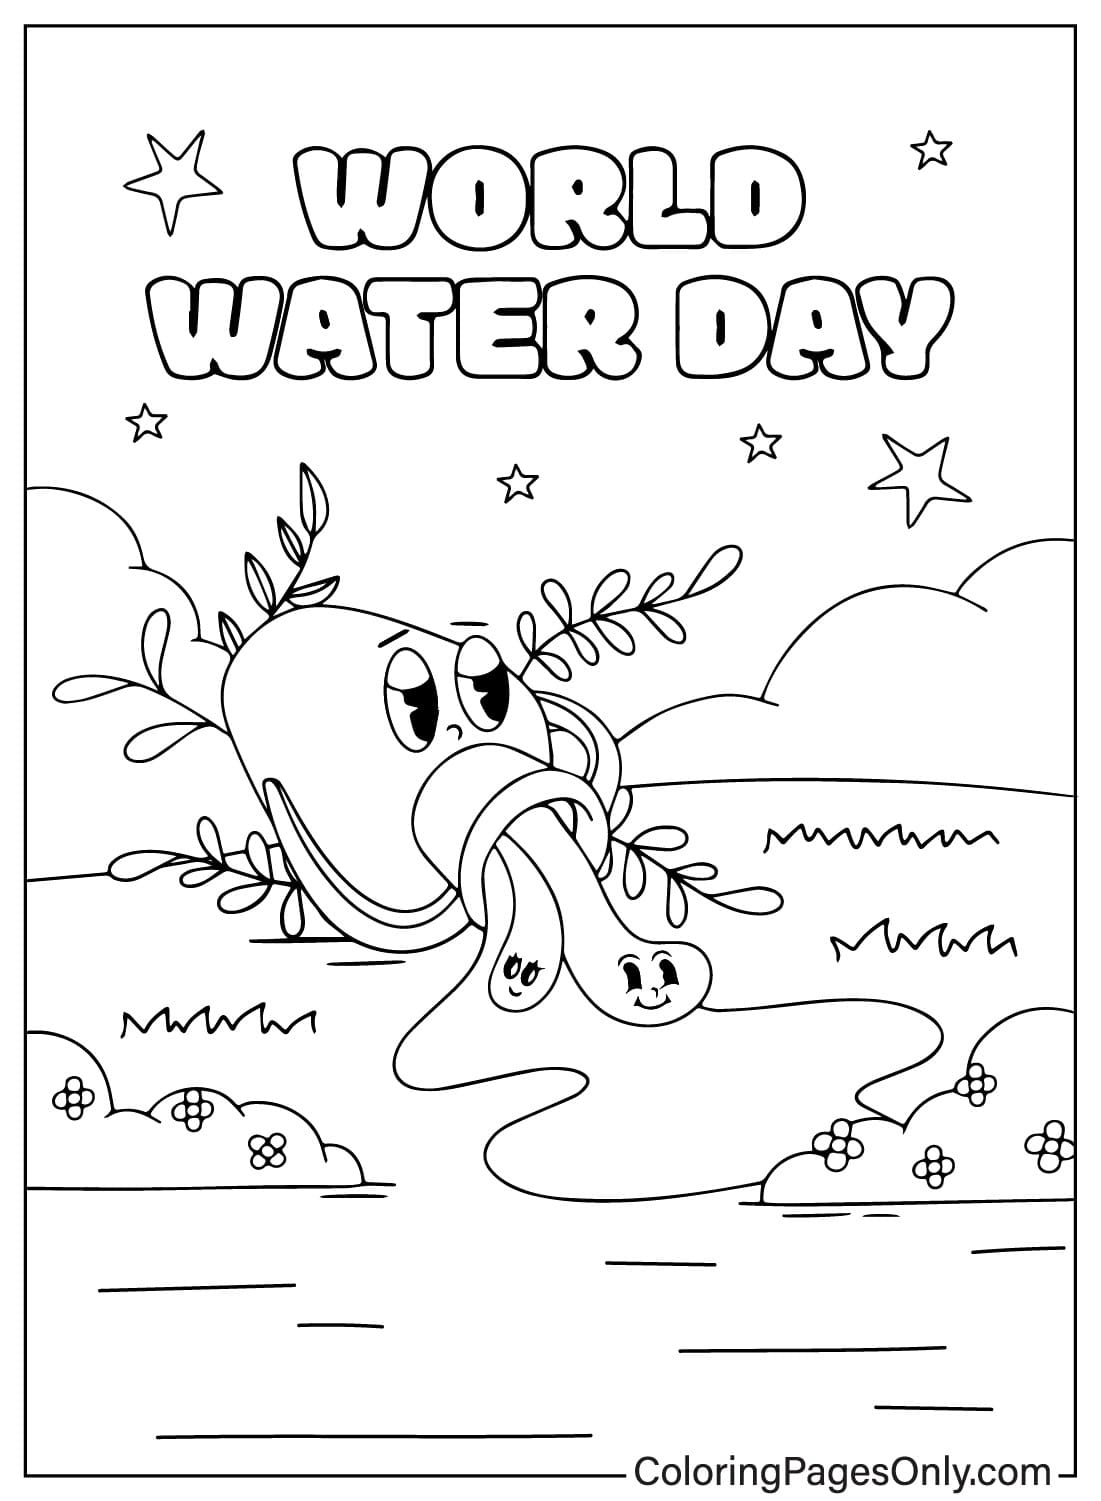 Página para colorear del Día Mundial del Agua Kawaii del Día Mundial del Agua